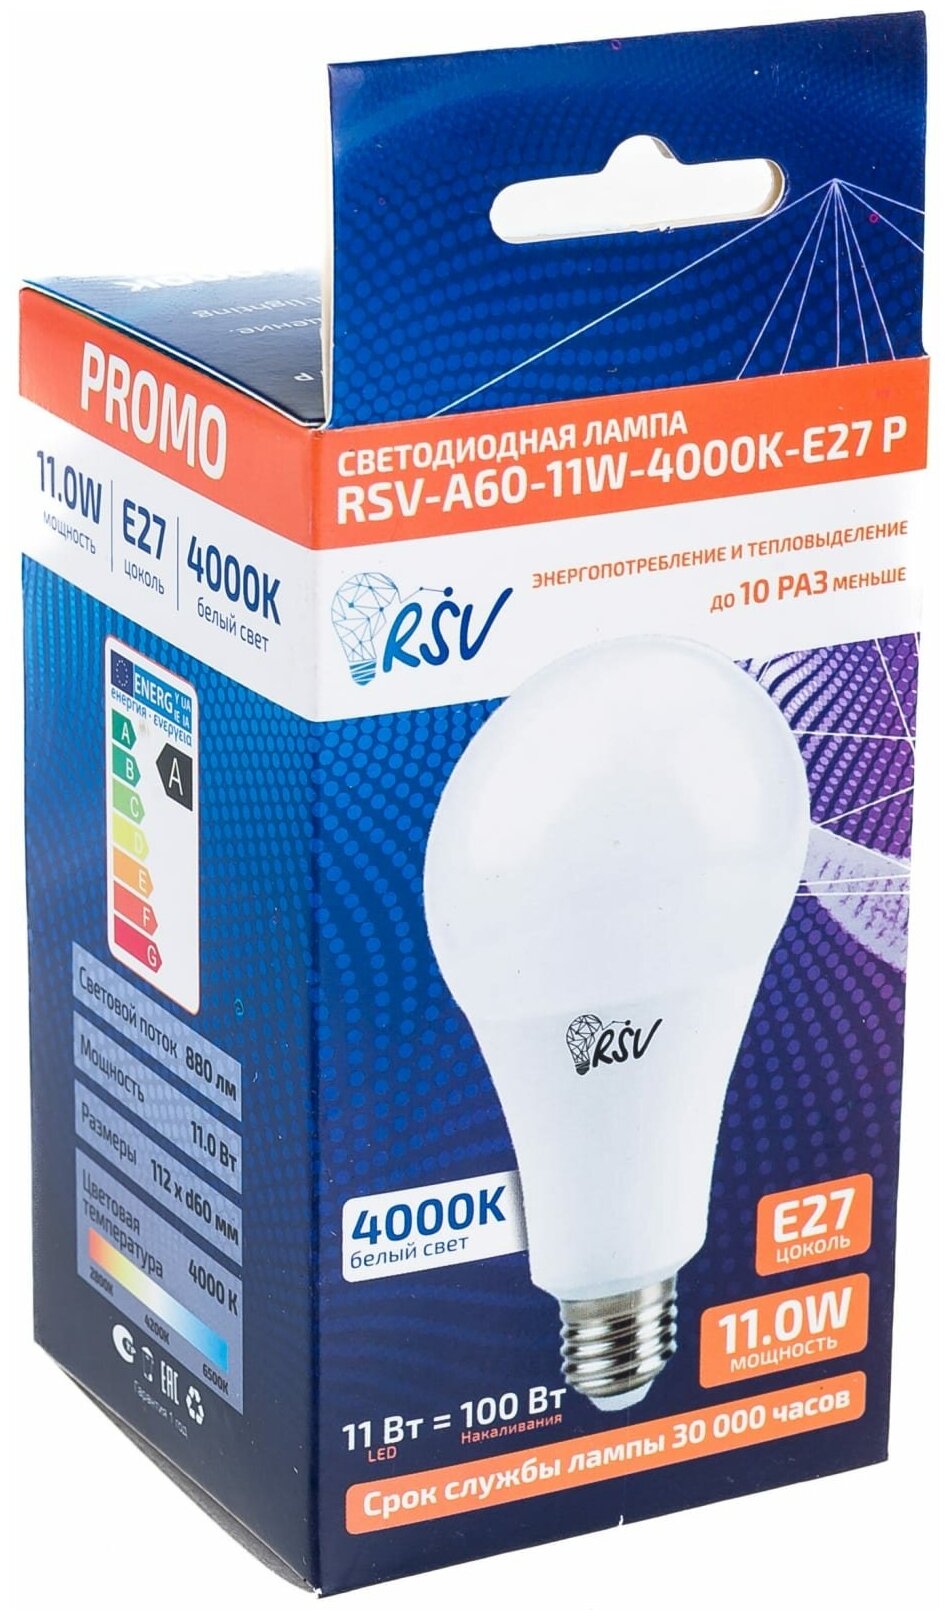 Светодиодная лампа RSV-A60-11W-4000K-E27 P - фотография № 2